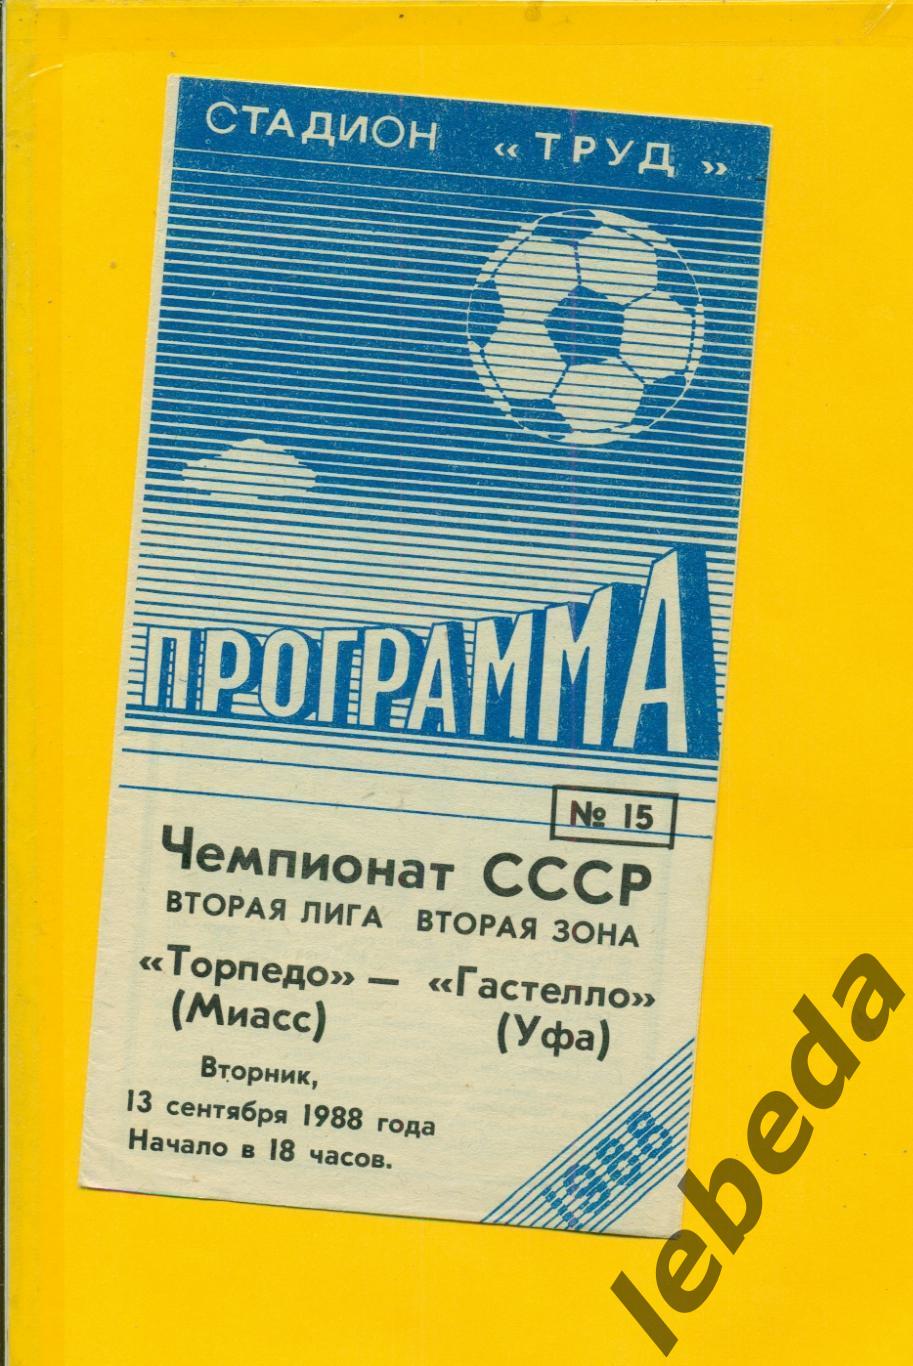 Торпедо Миасс - Гастелло Уфа - 1988 г.(13.09.88.)